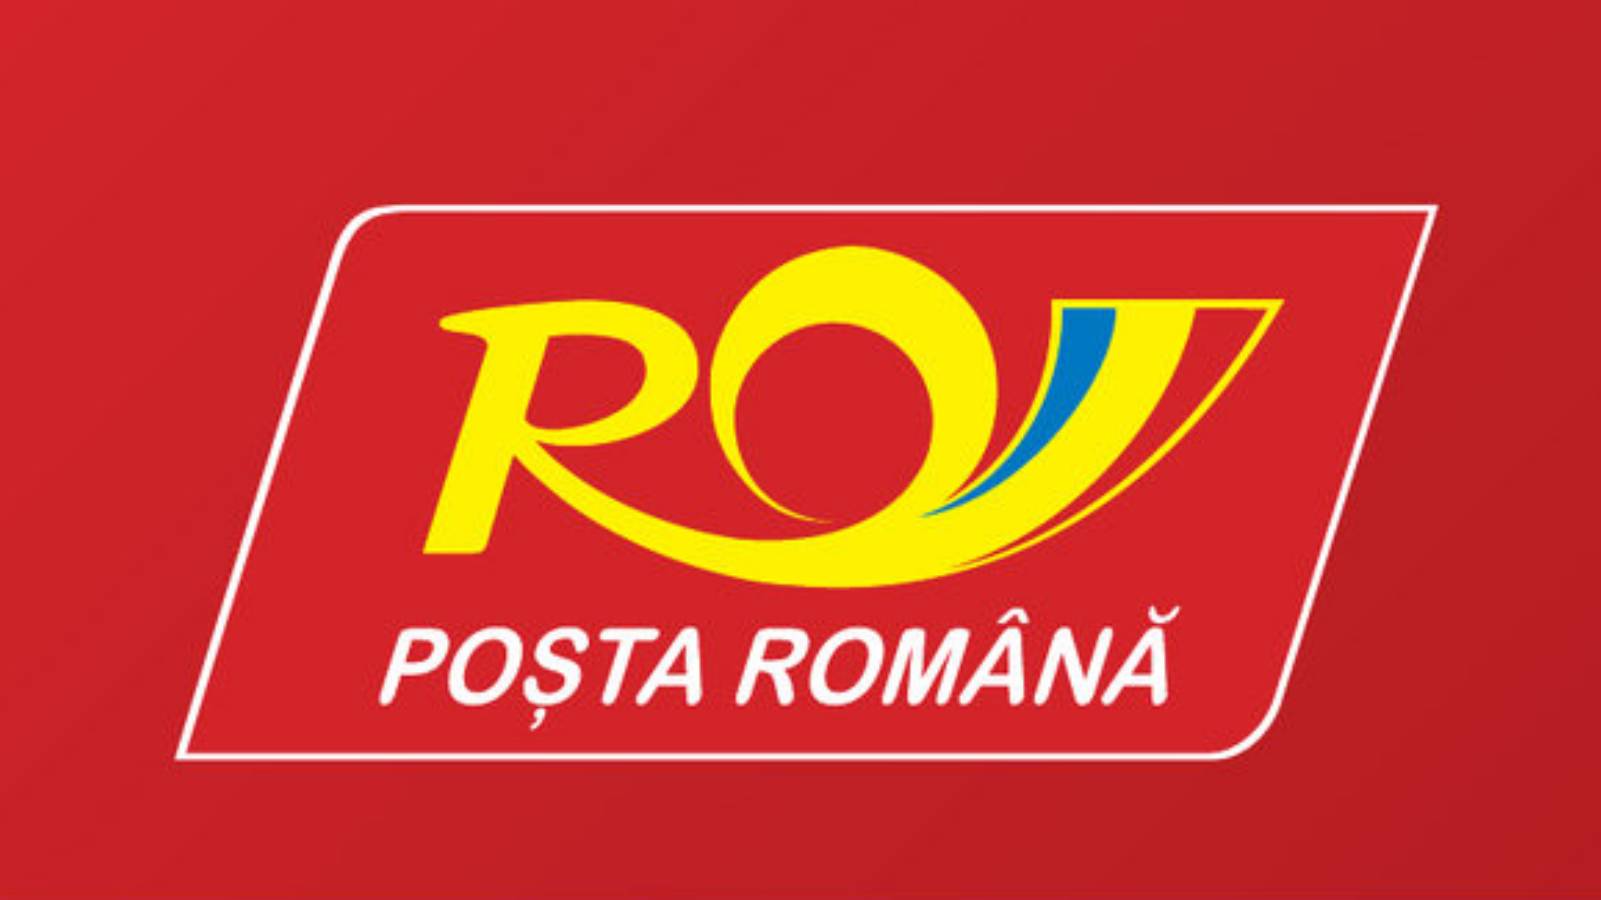 Romanian Post Il messaggio sorprendente che i romeni non sapevano